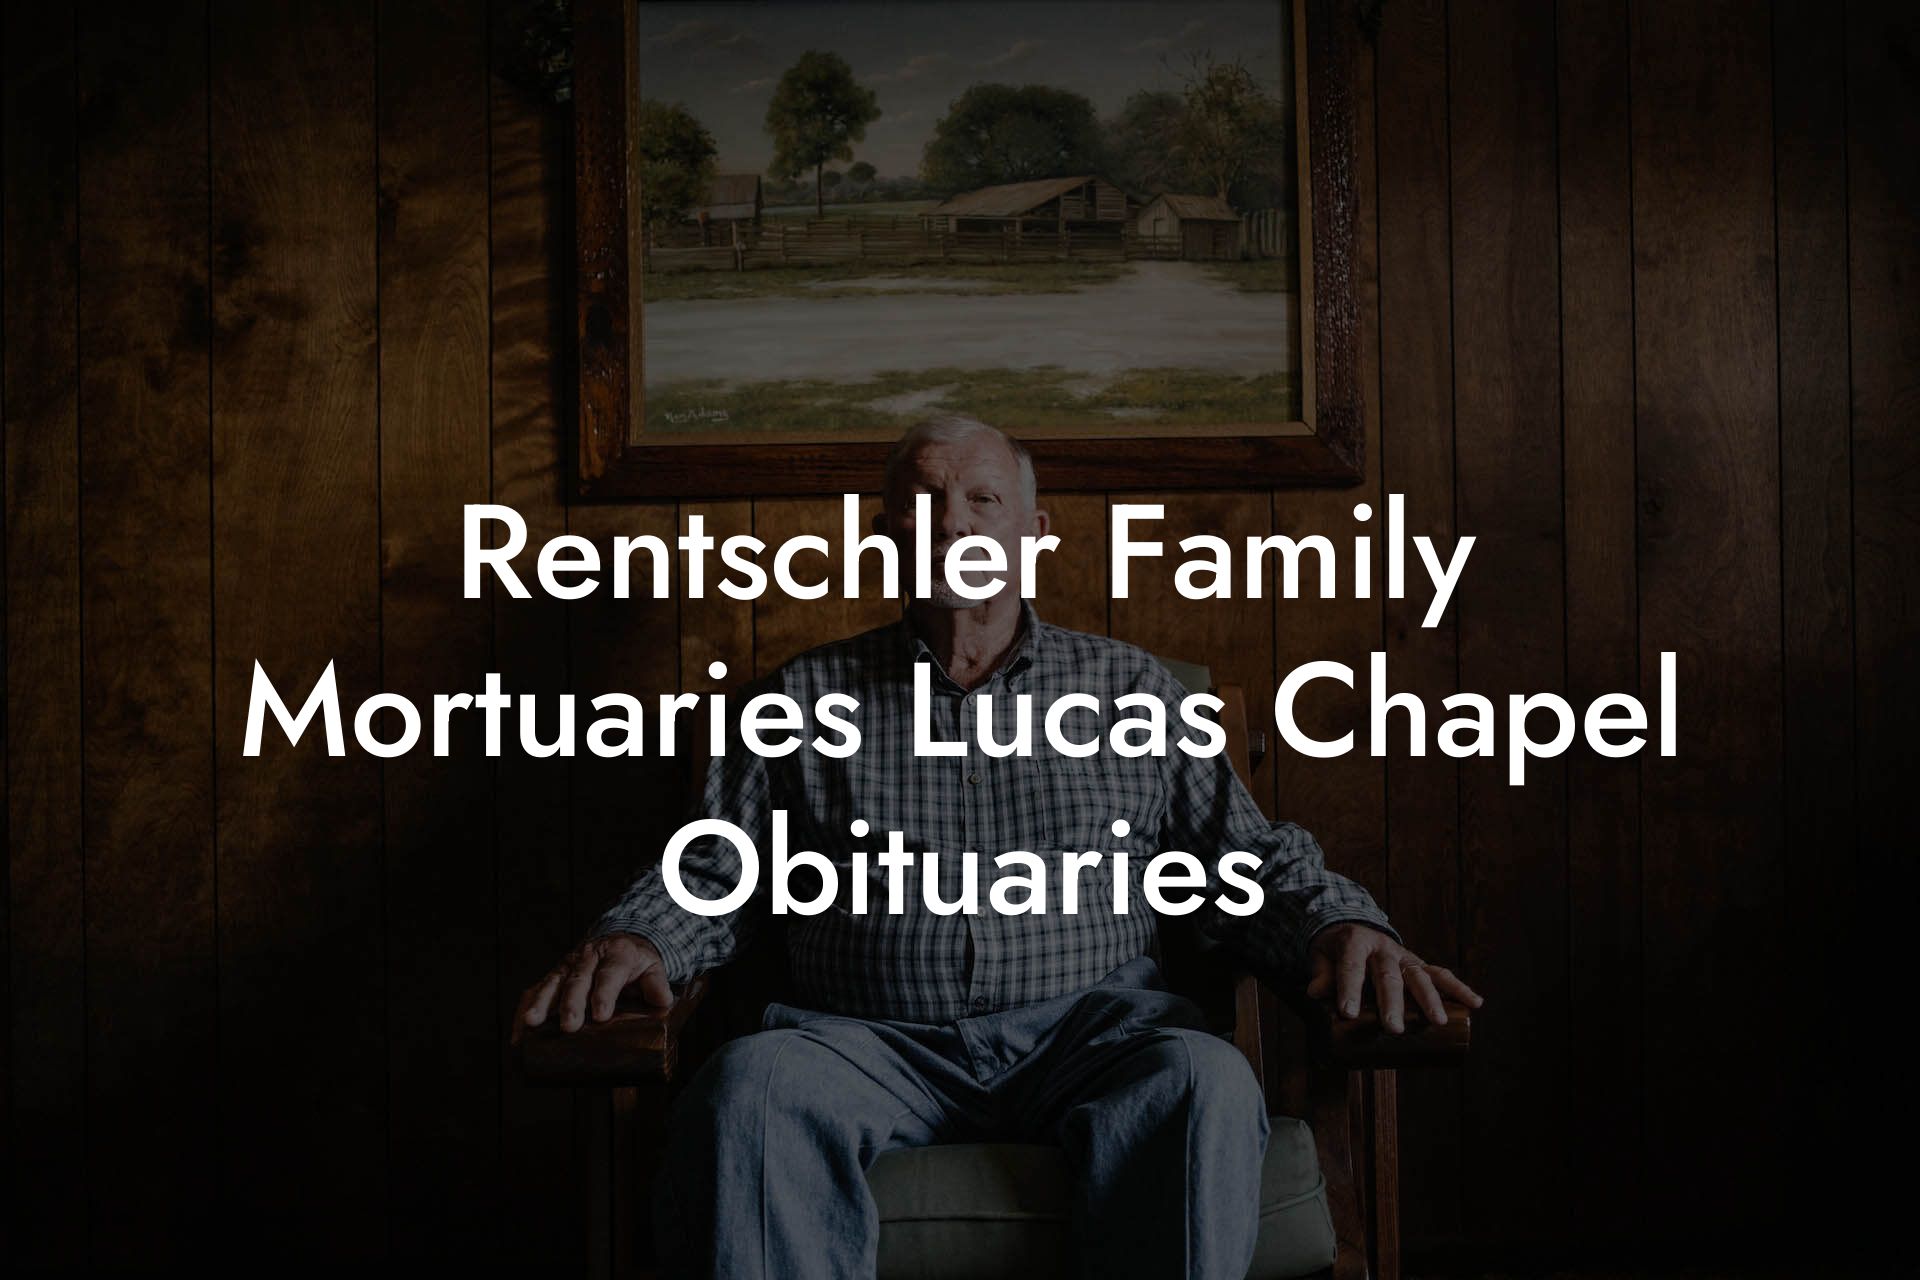 Rentschler Family Mortuaries Lucas Chapel Obituaries